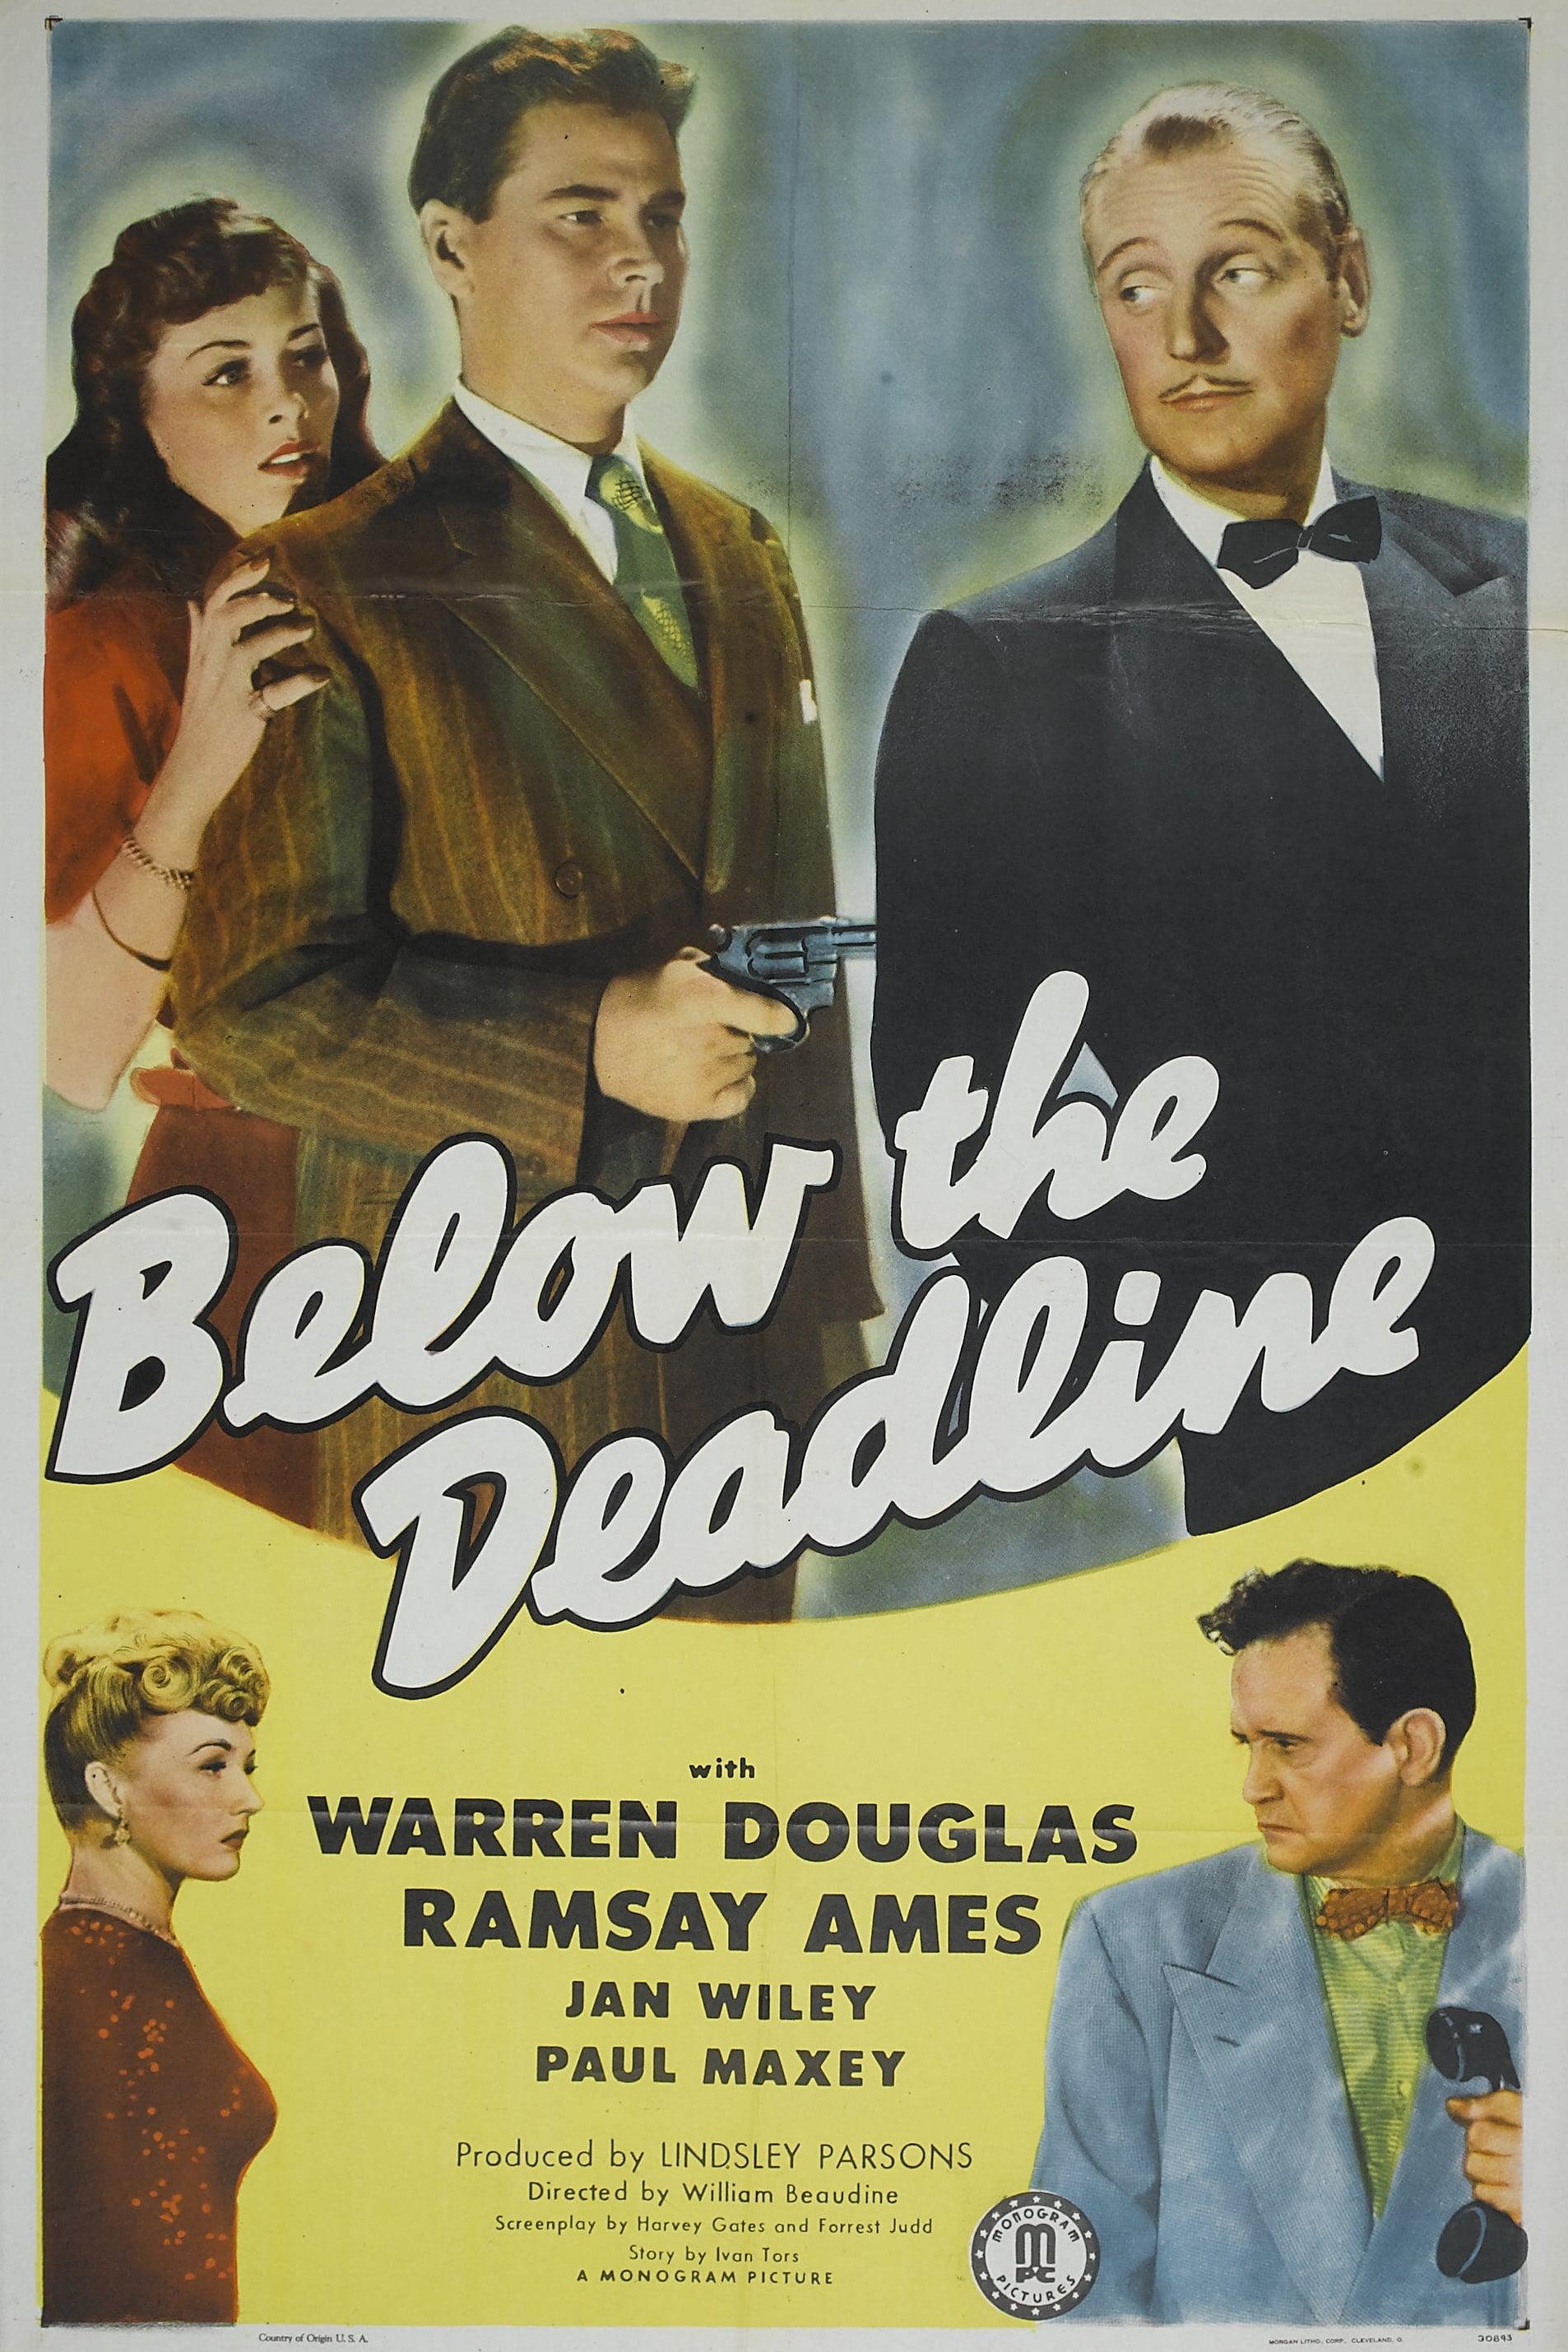 Below the Deadline poster